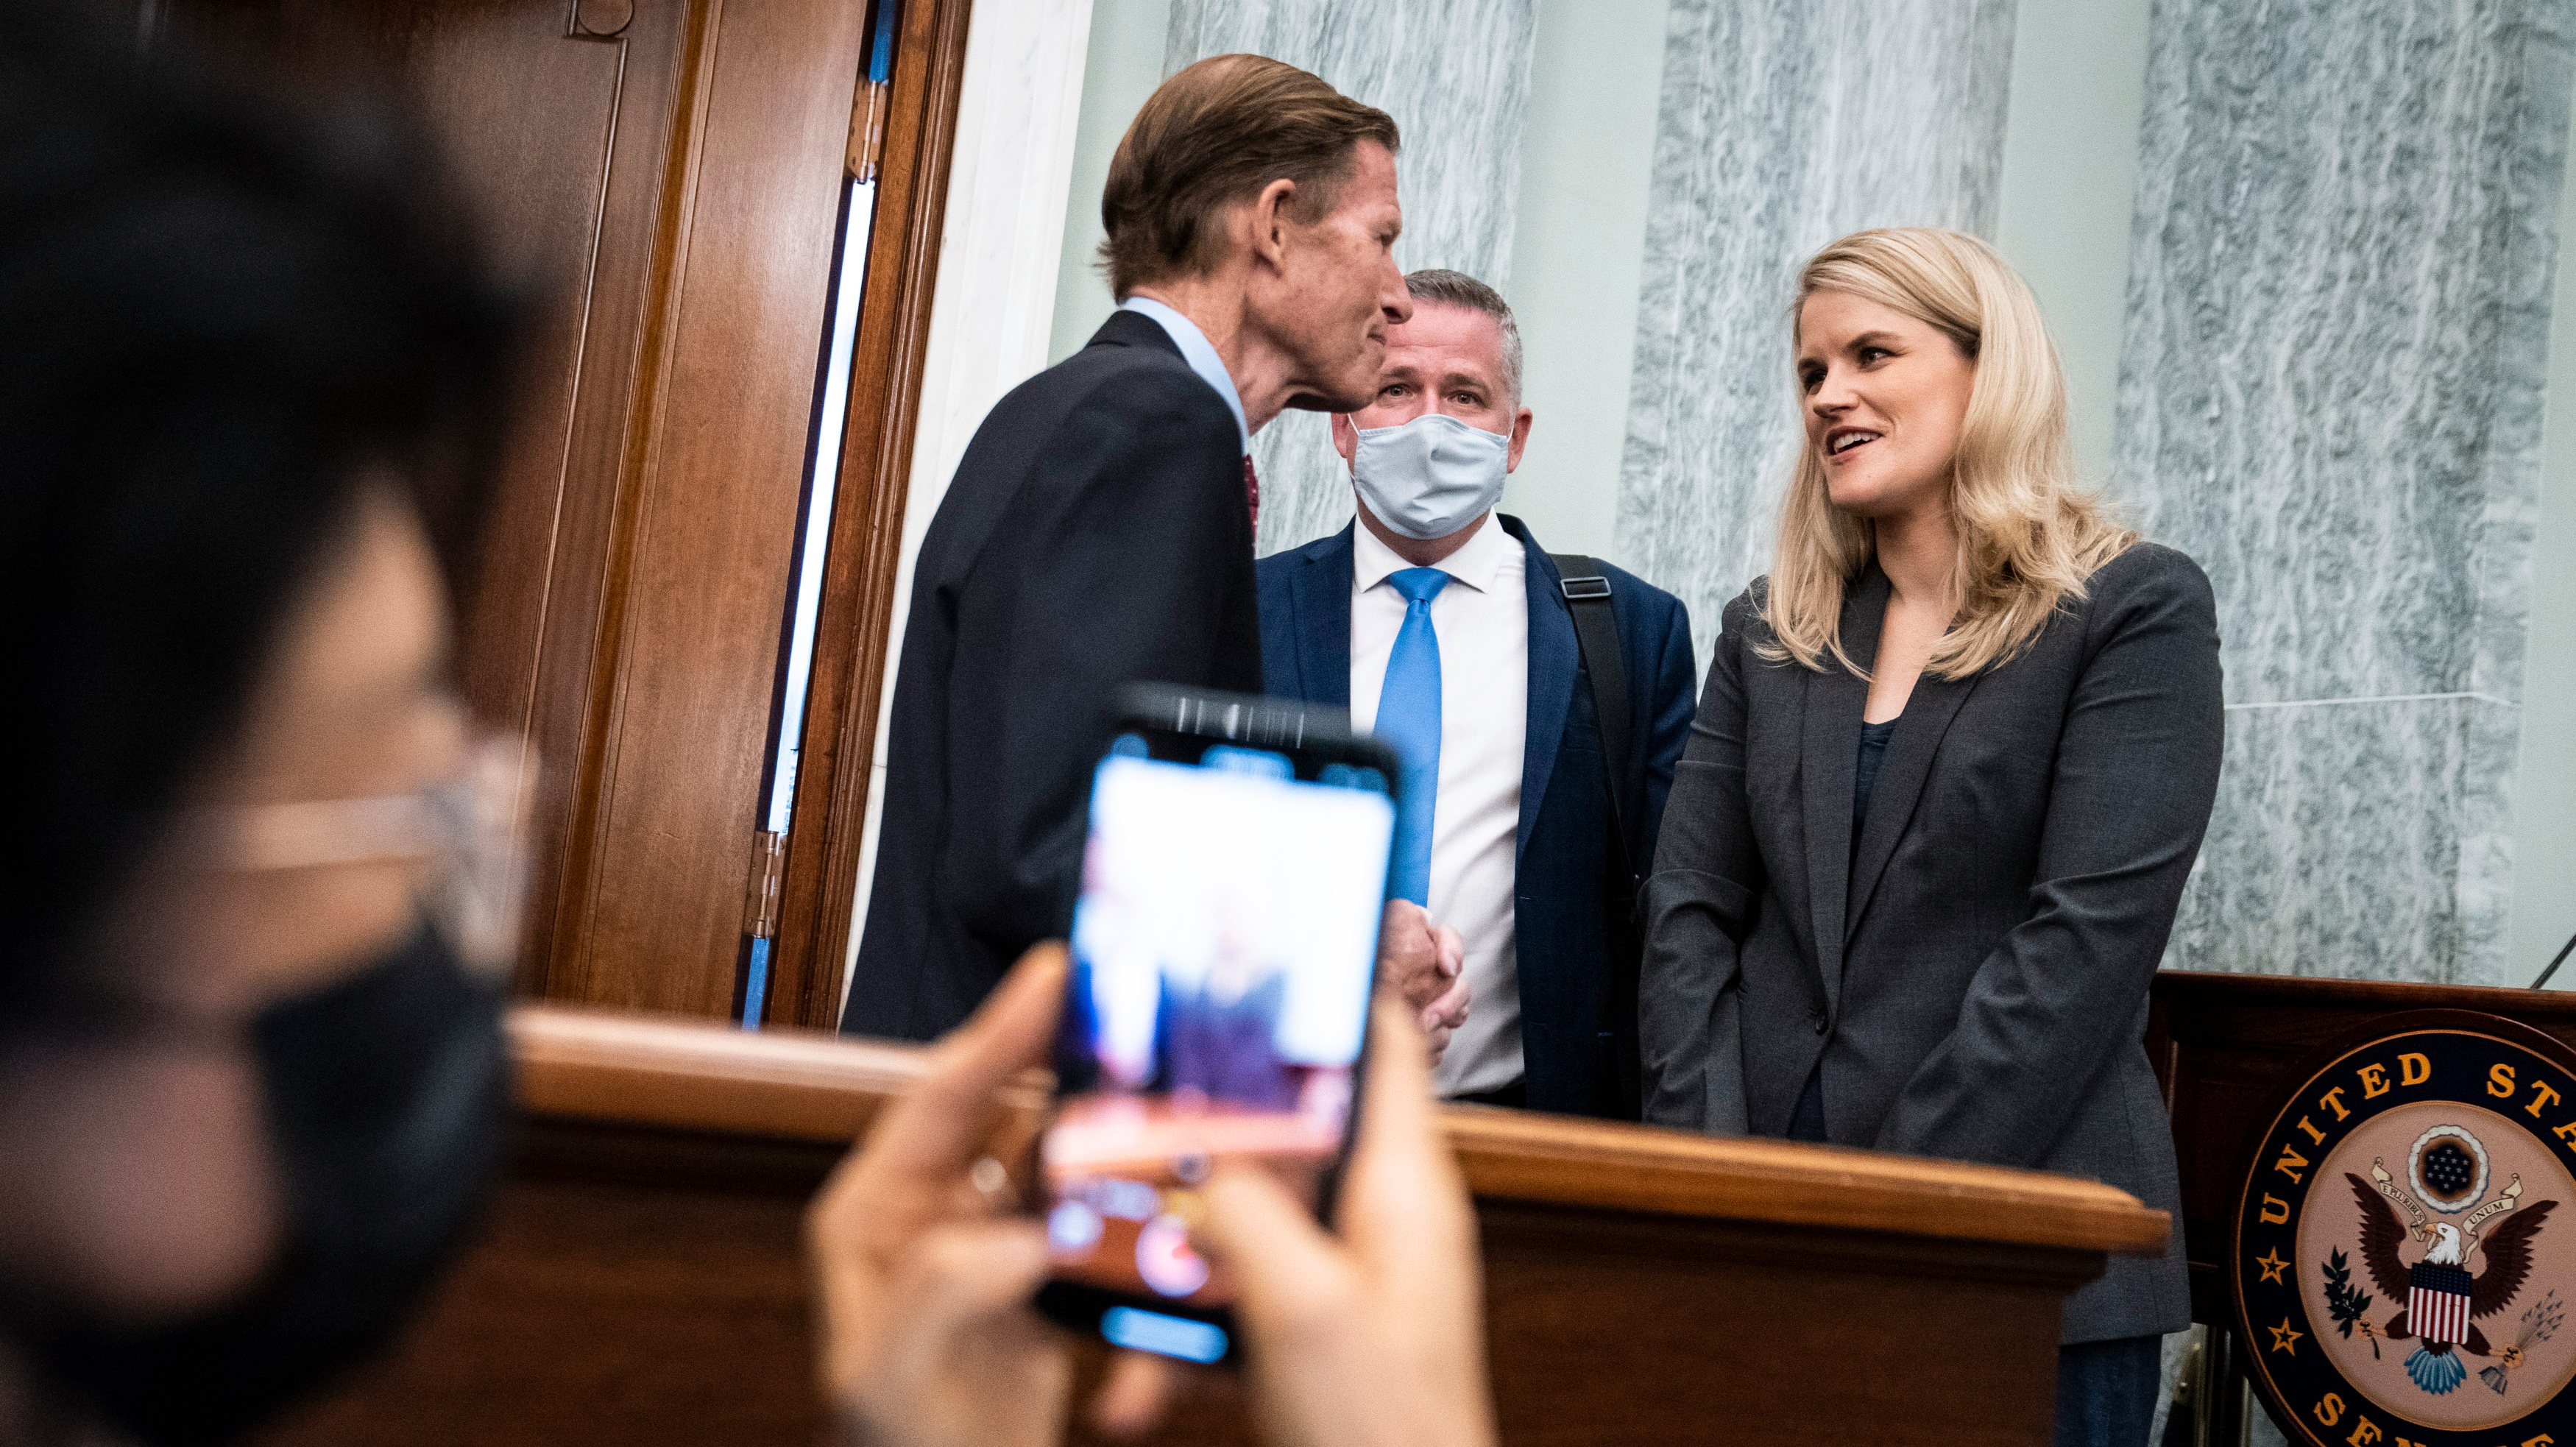 Facebook Whistle Blower Frances Haugen Testifies To Senate Committee